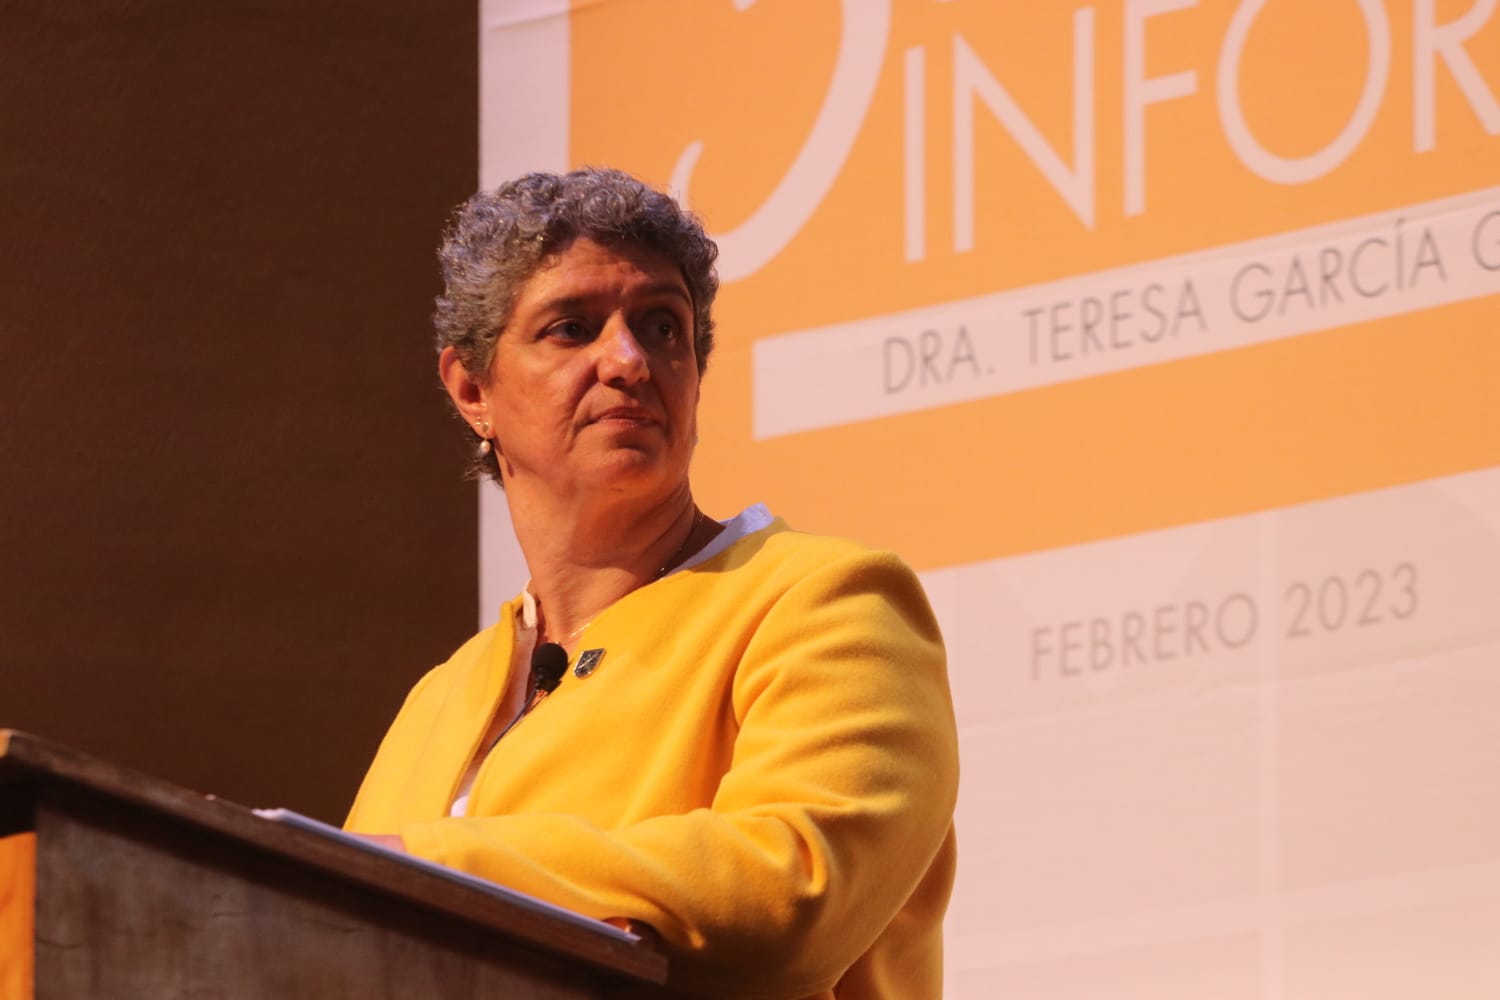 La rectora Teresa García reconoció los cambios de estrategia que trajo consigo el parto estudiantil. Armando Vázquez